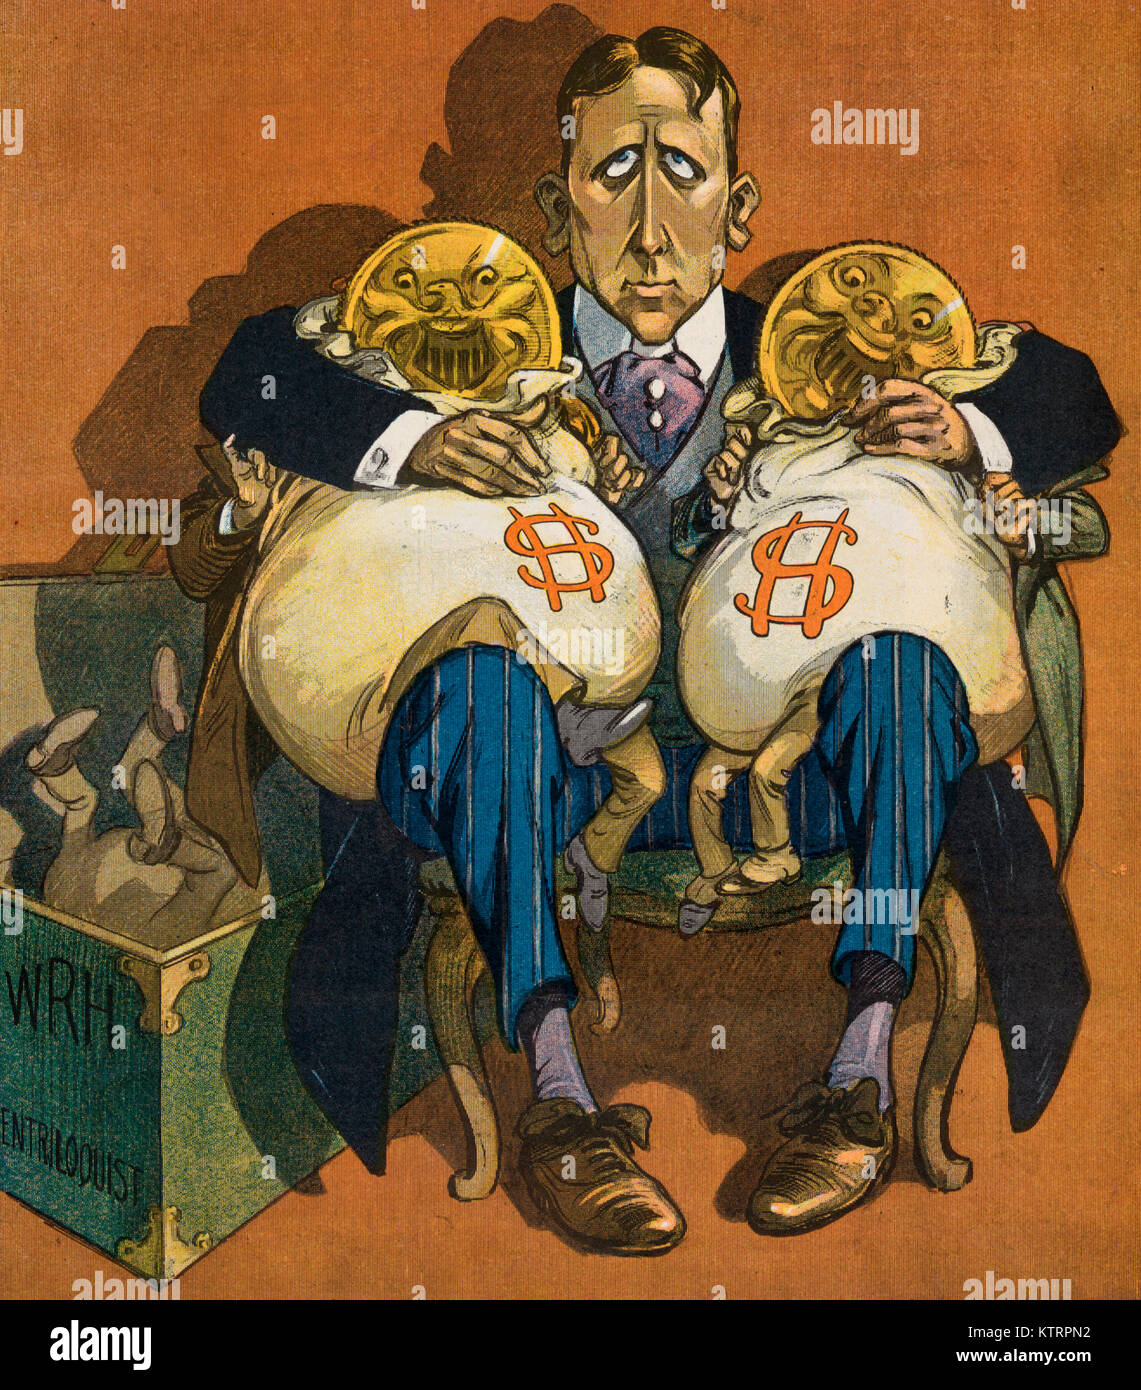 L'argent parle - Illustration montre William Randolph Hearst assis avec deux gros sacs d'argent, animé, en appui sur ses genoux, les bras et les jambes, et montrant deux grandes pièces que chefs ; à l'étage à côté de Hearst est une zone "WRH ventriloque". Caricature politique, 1906 Banque D'Images